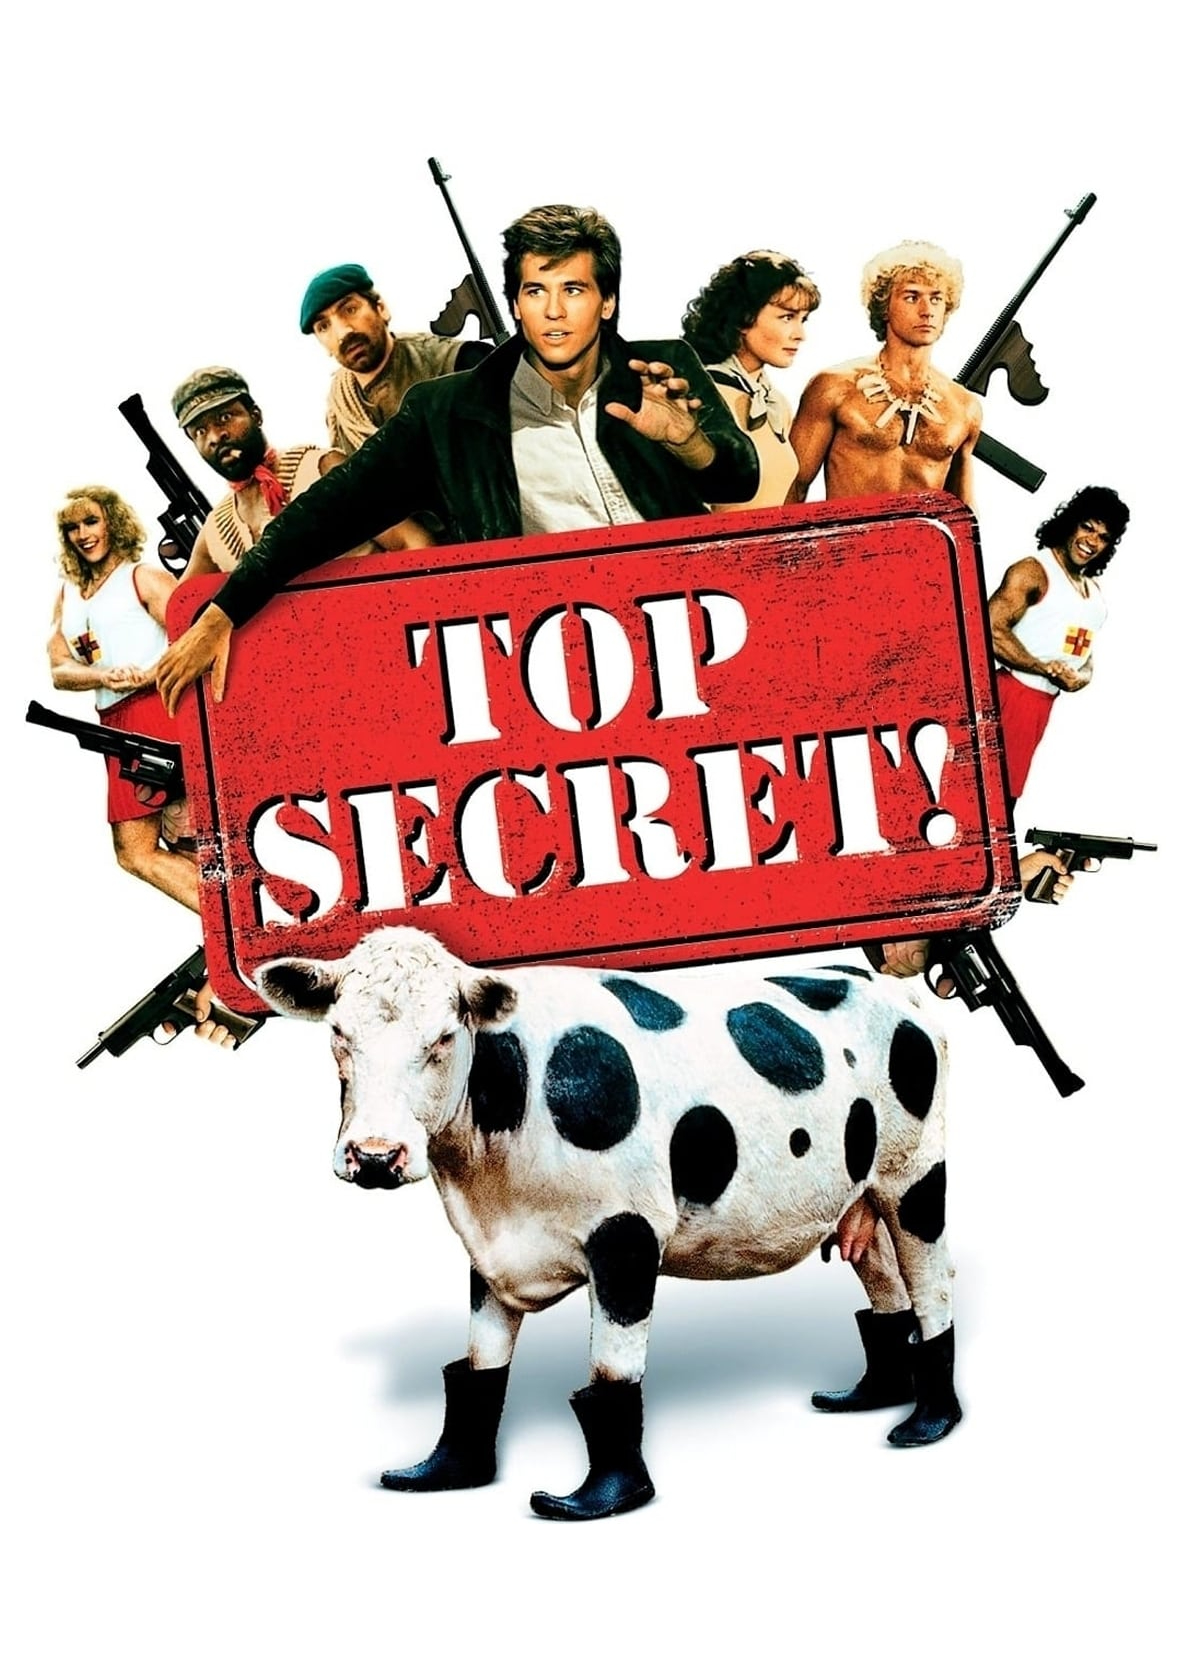 Top Secret! - Top Secret!